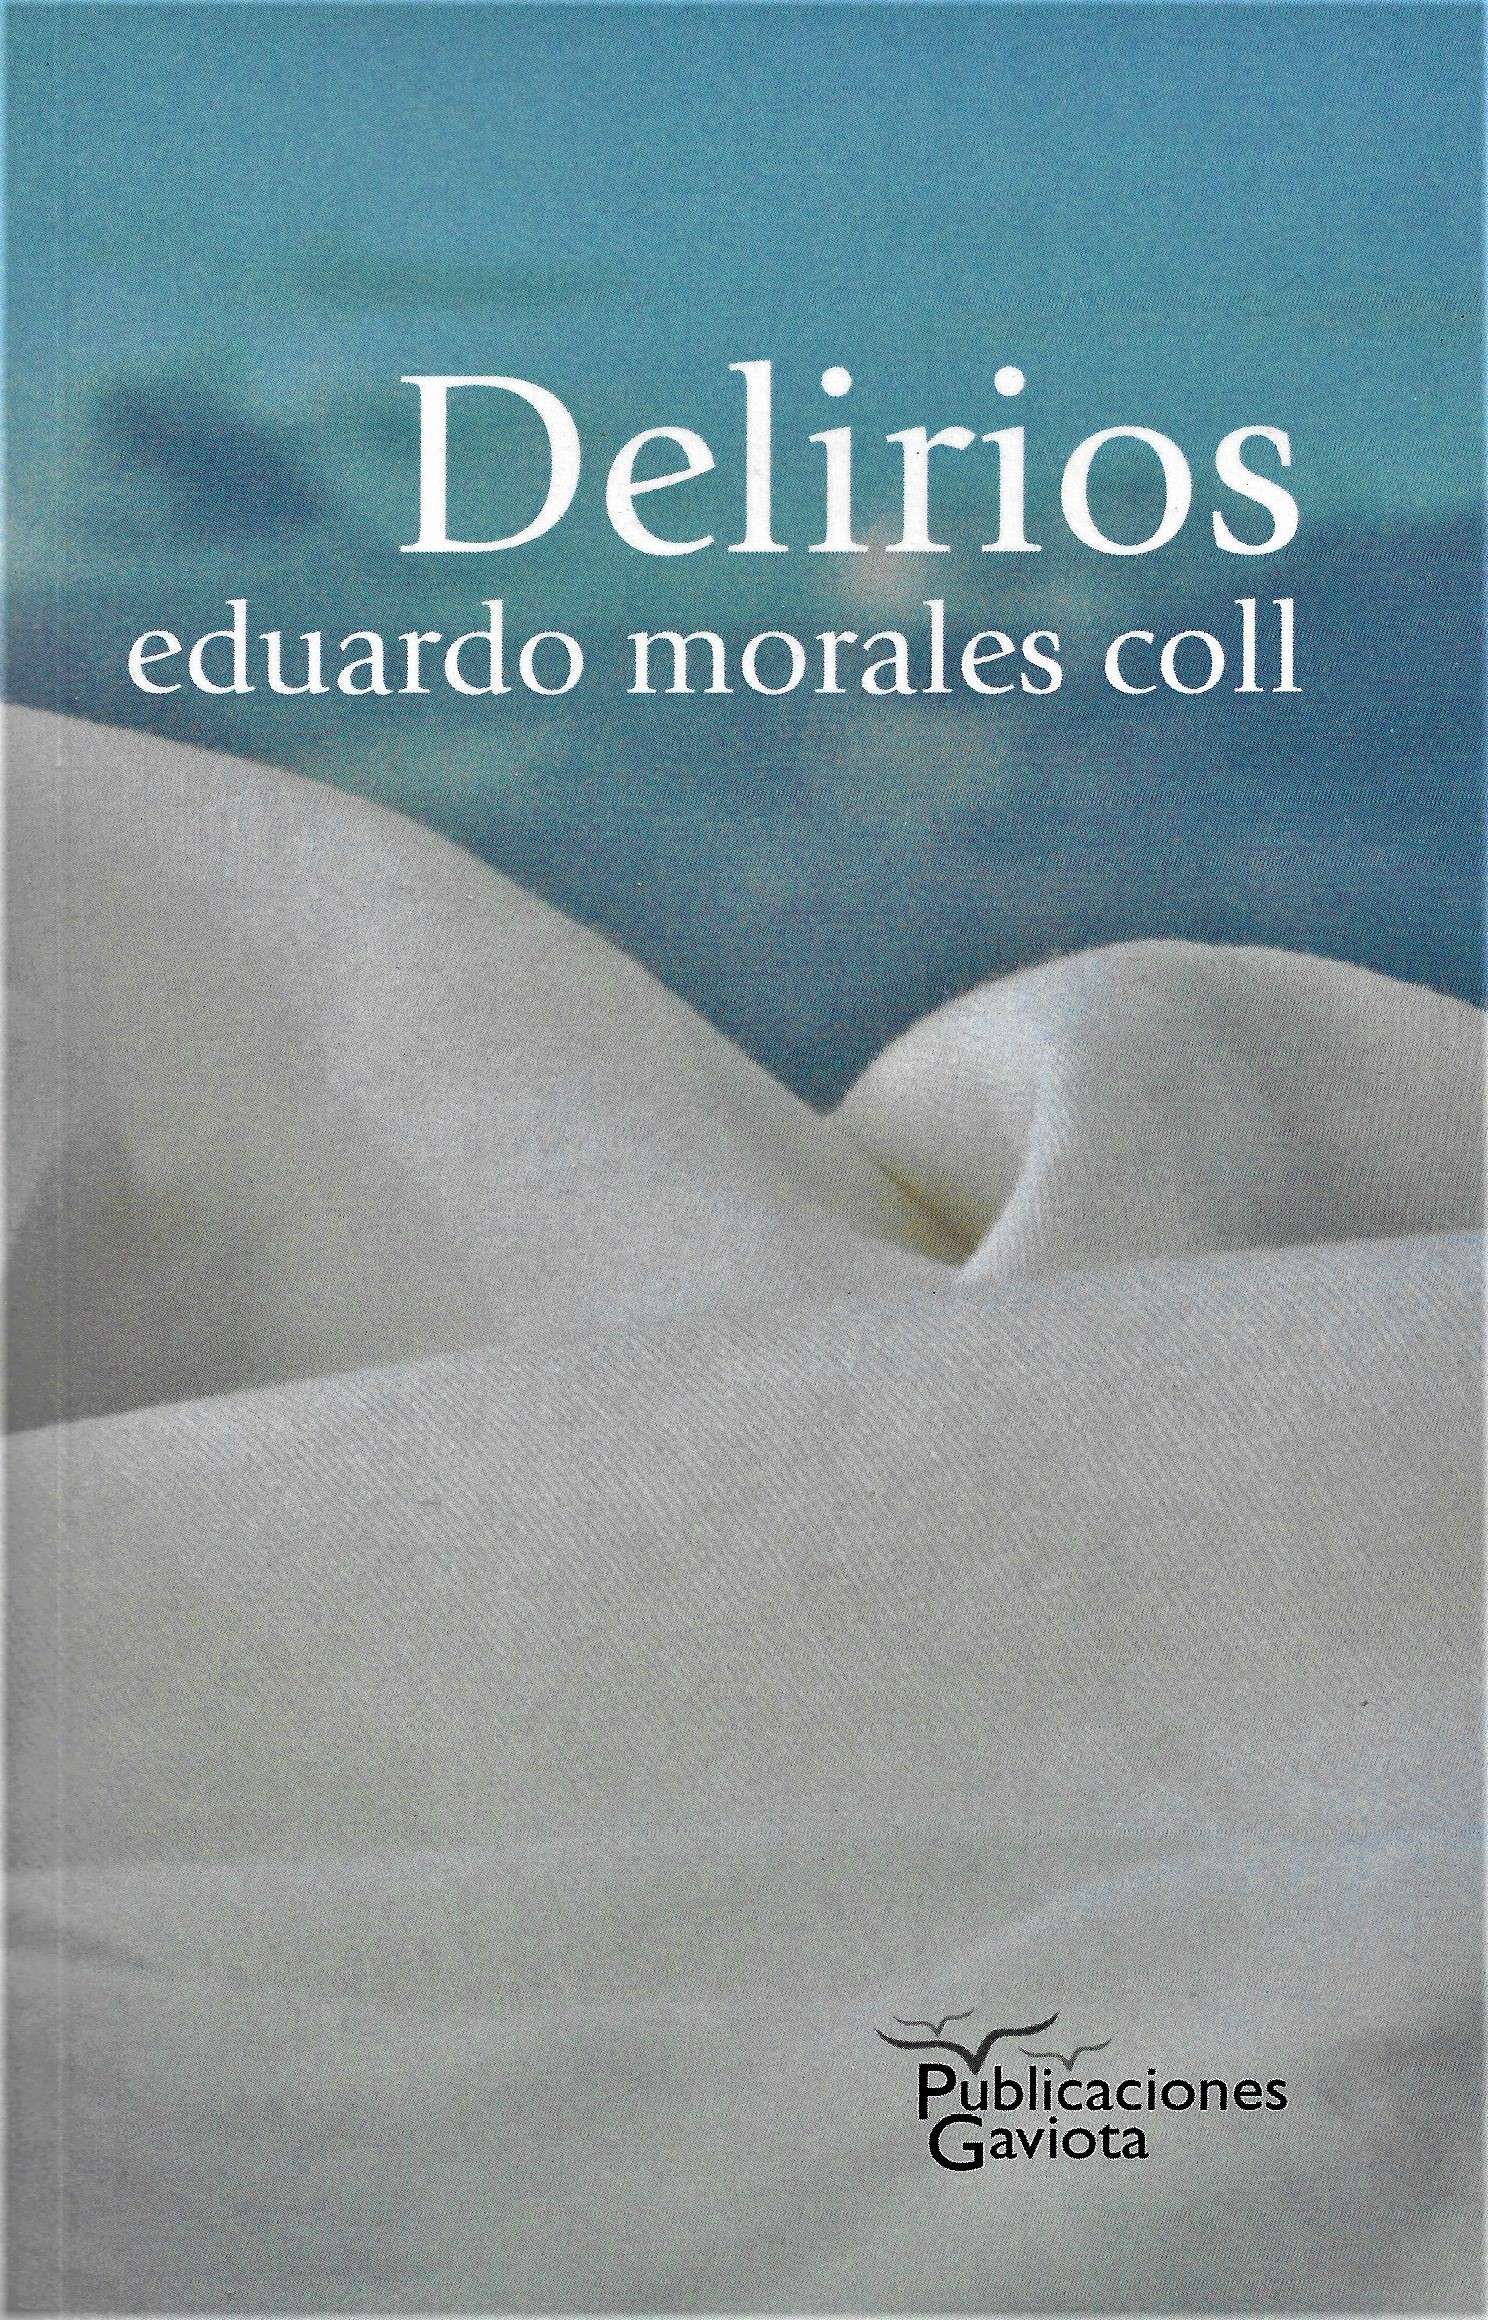 FEBRERO 2020 - MORALES COLL - DELIRIOS